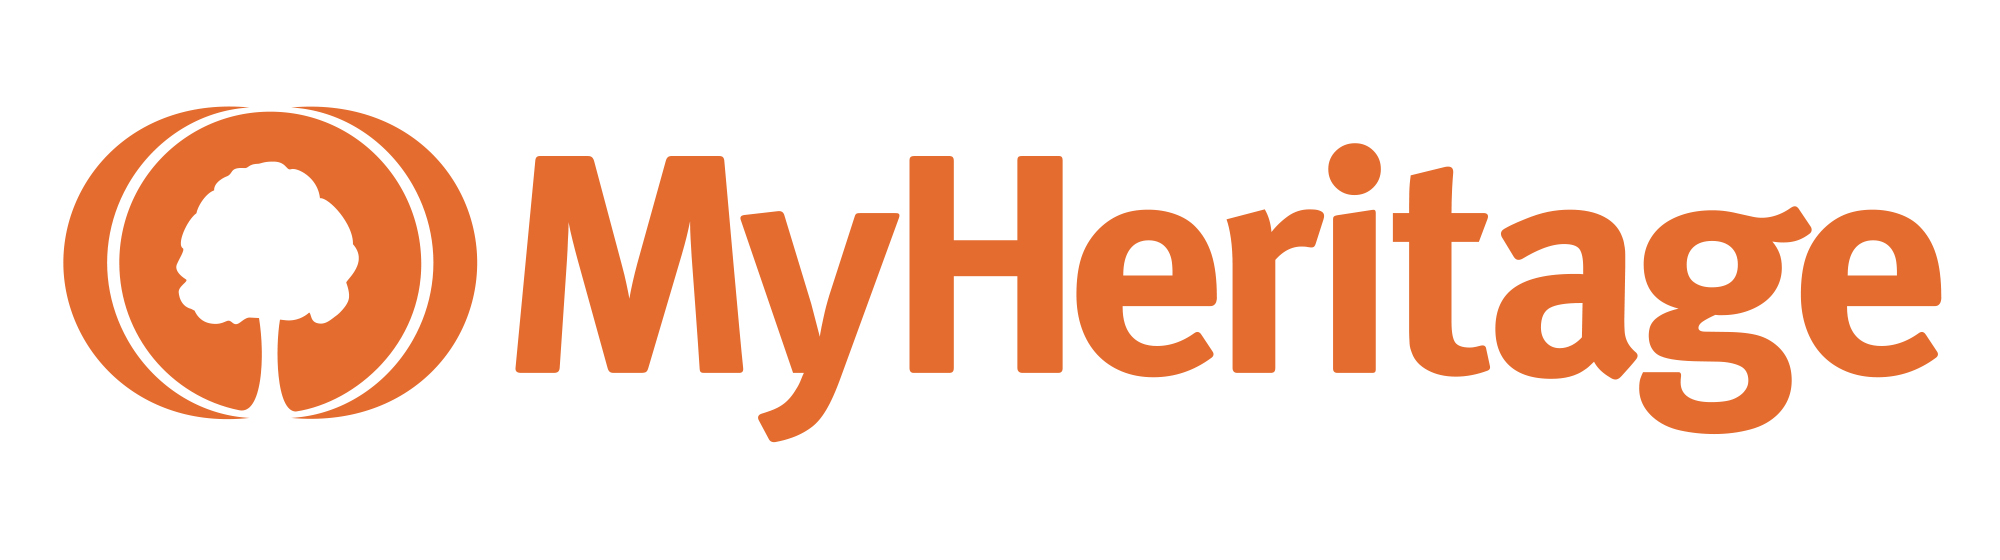 MyHeritage voucher codes